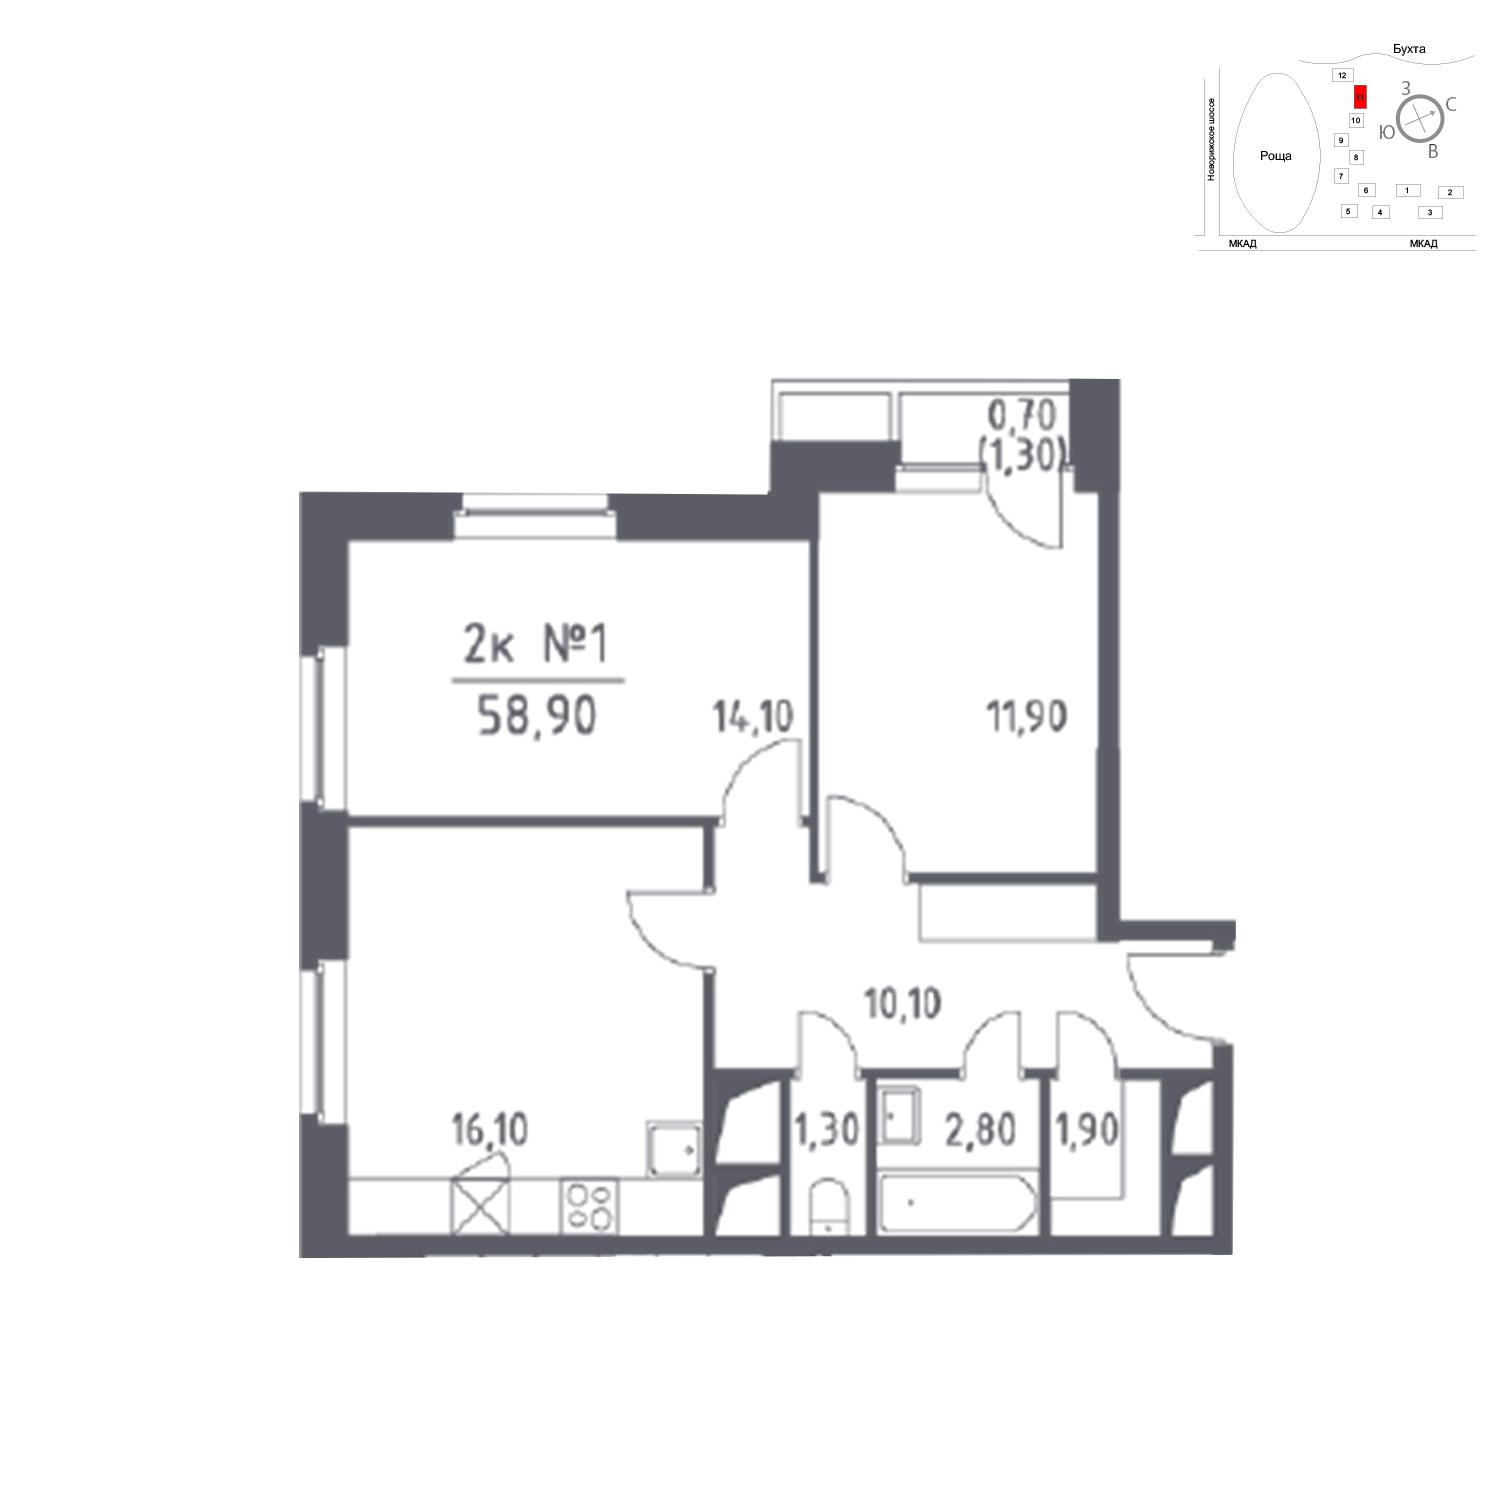 Продаётся 2-комнатная квартира в новостройке 58.9 кв.м. этаж 18/33 за 0 руб 